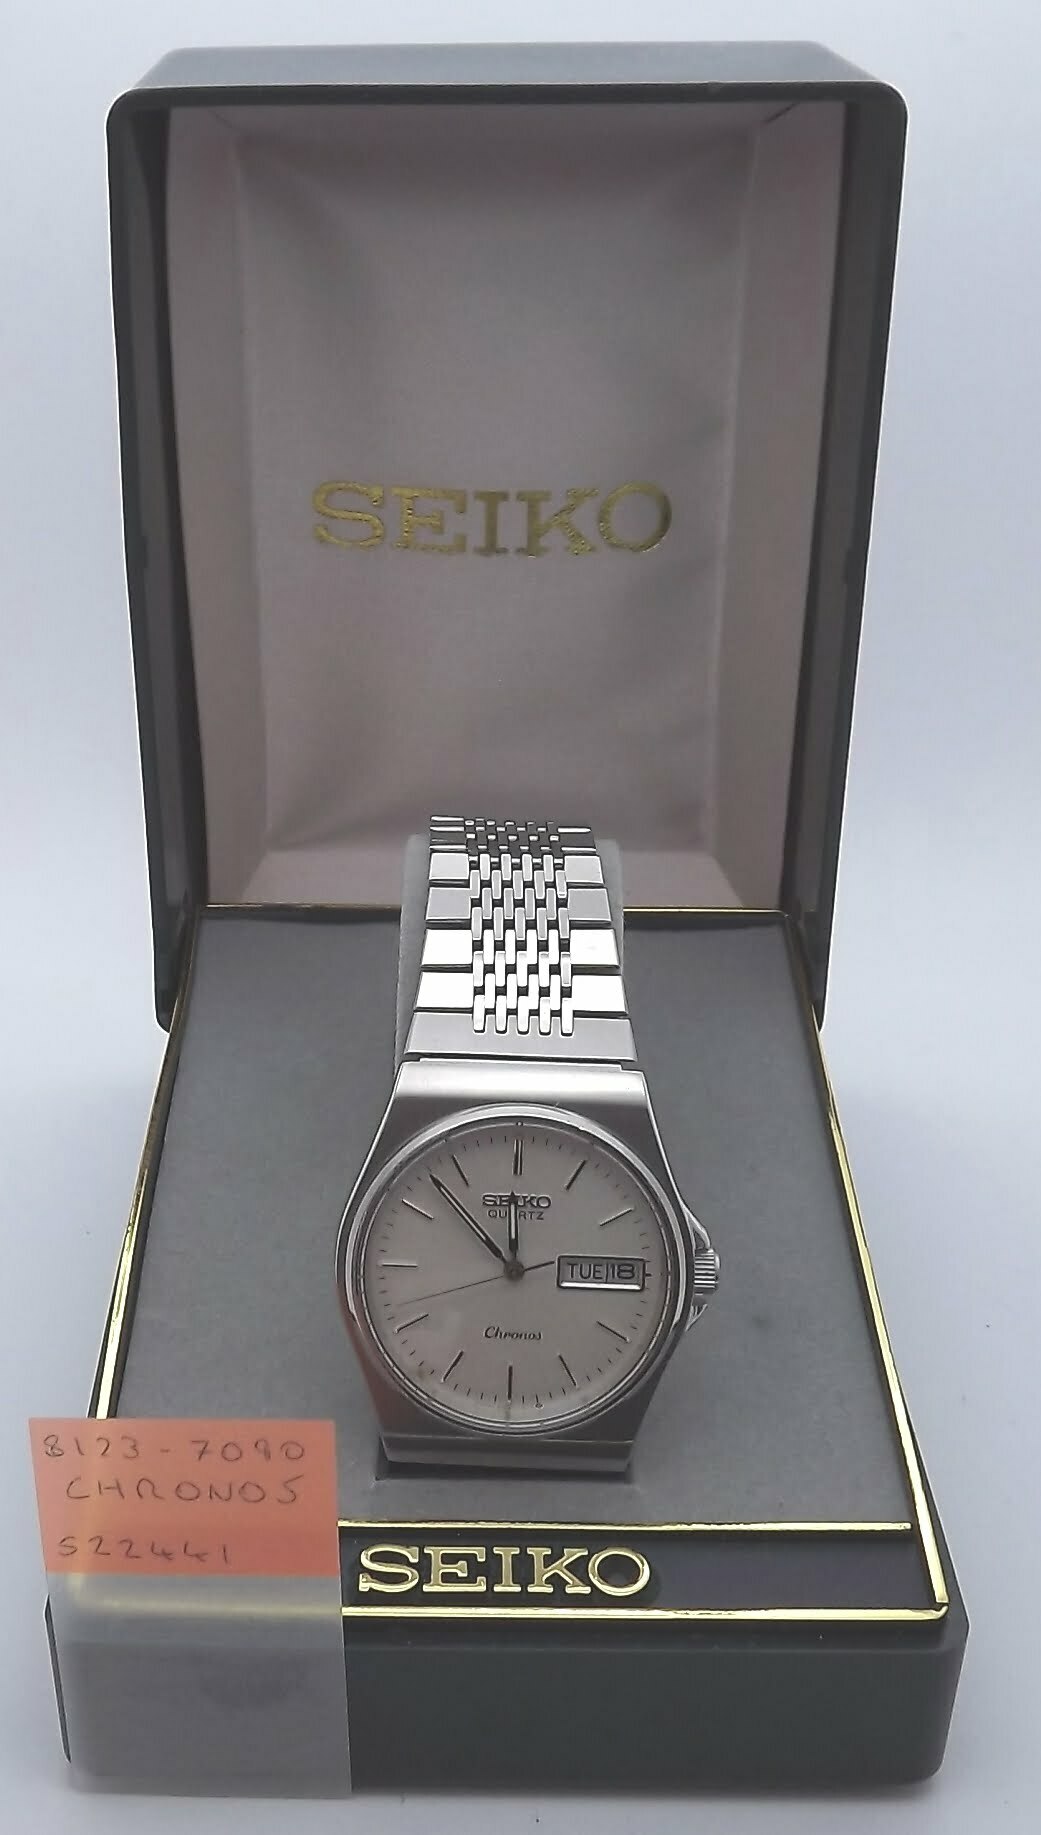 8123-7090 – Seiko Works